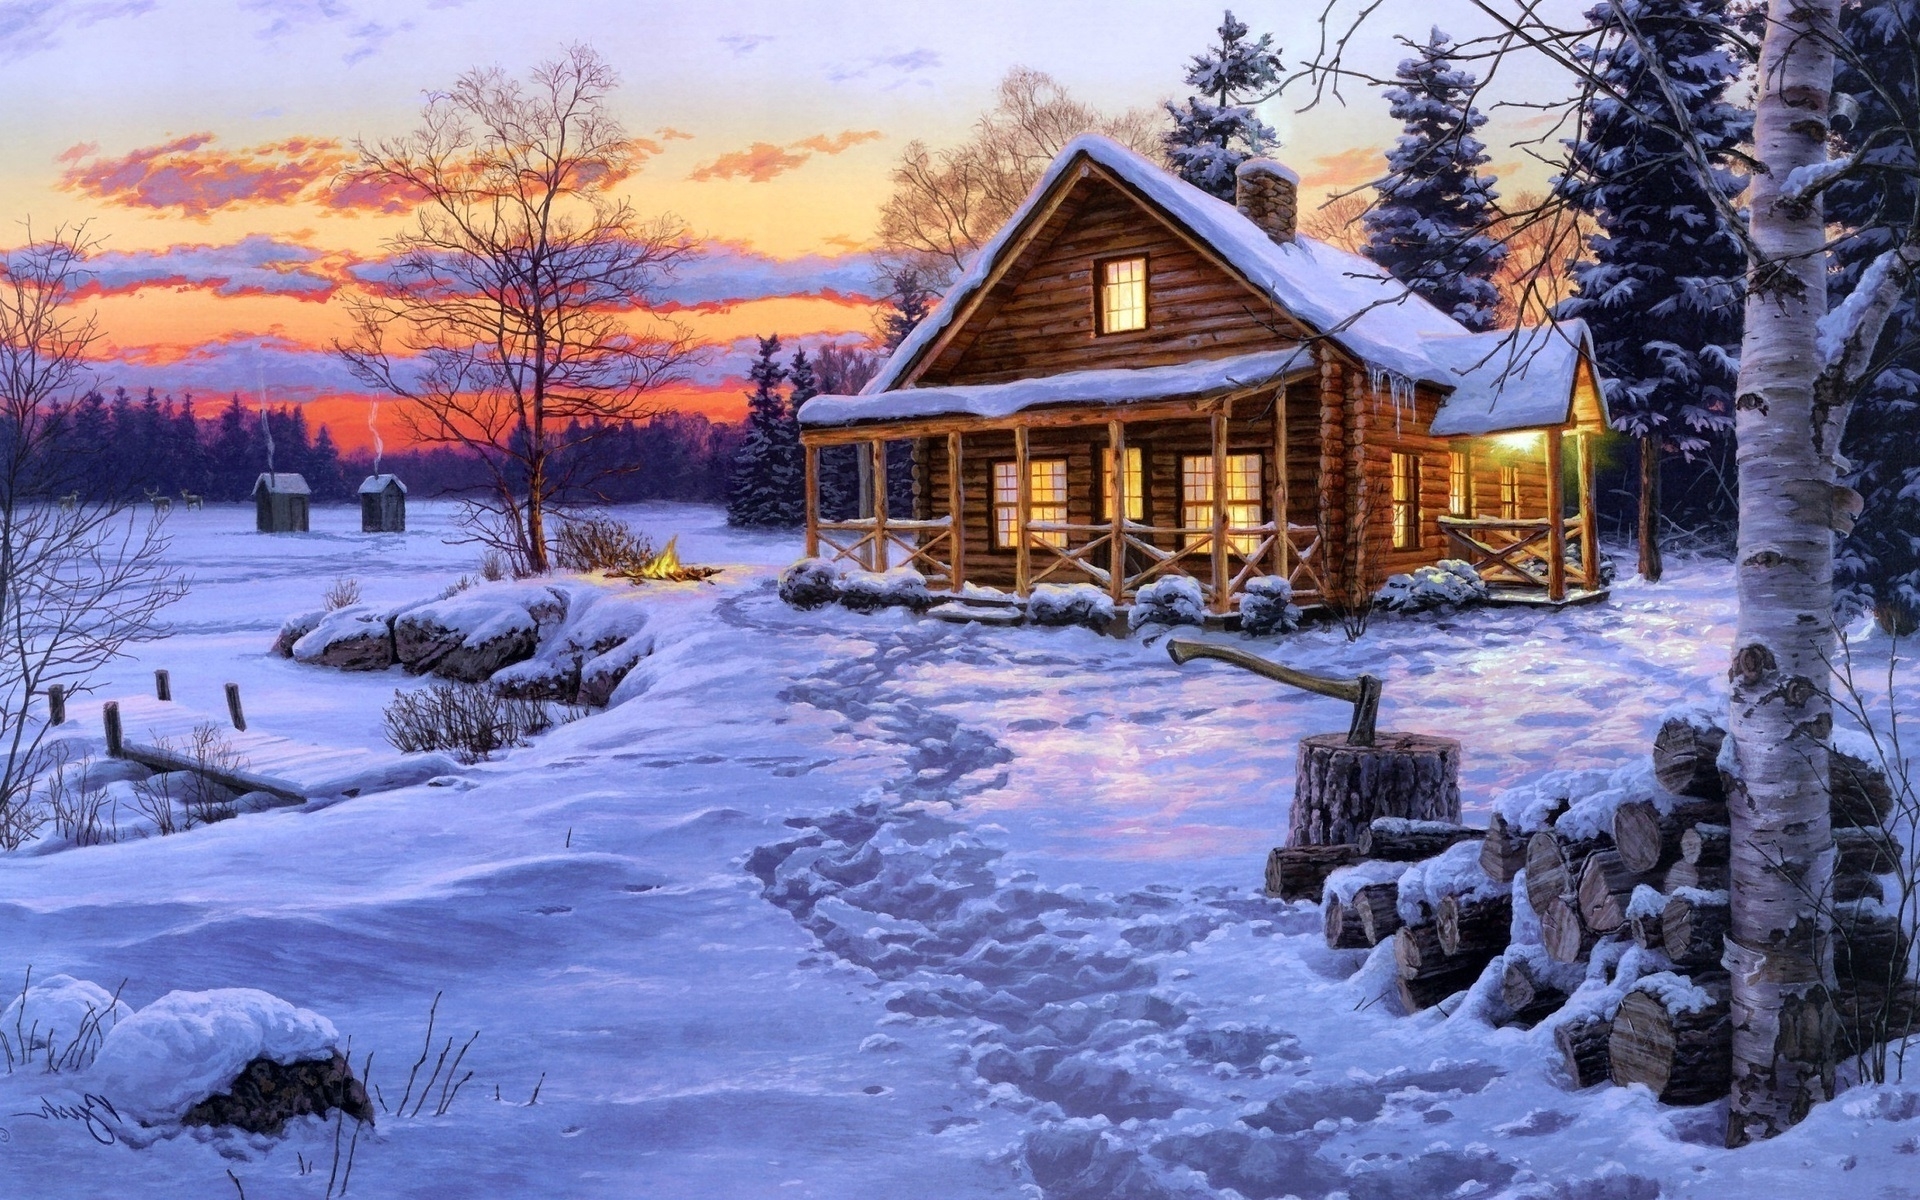 통나무 집 벽지,겨울,눈,집,하늘,자연 경관